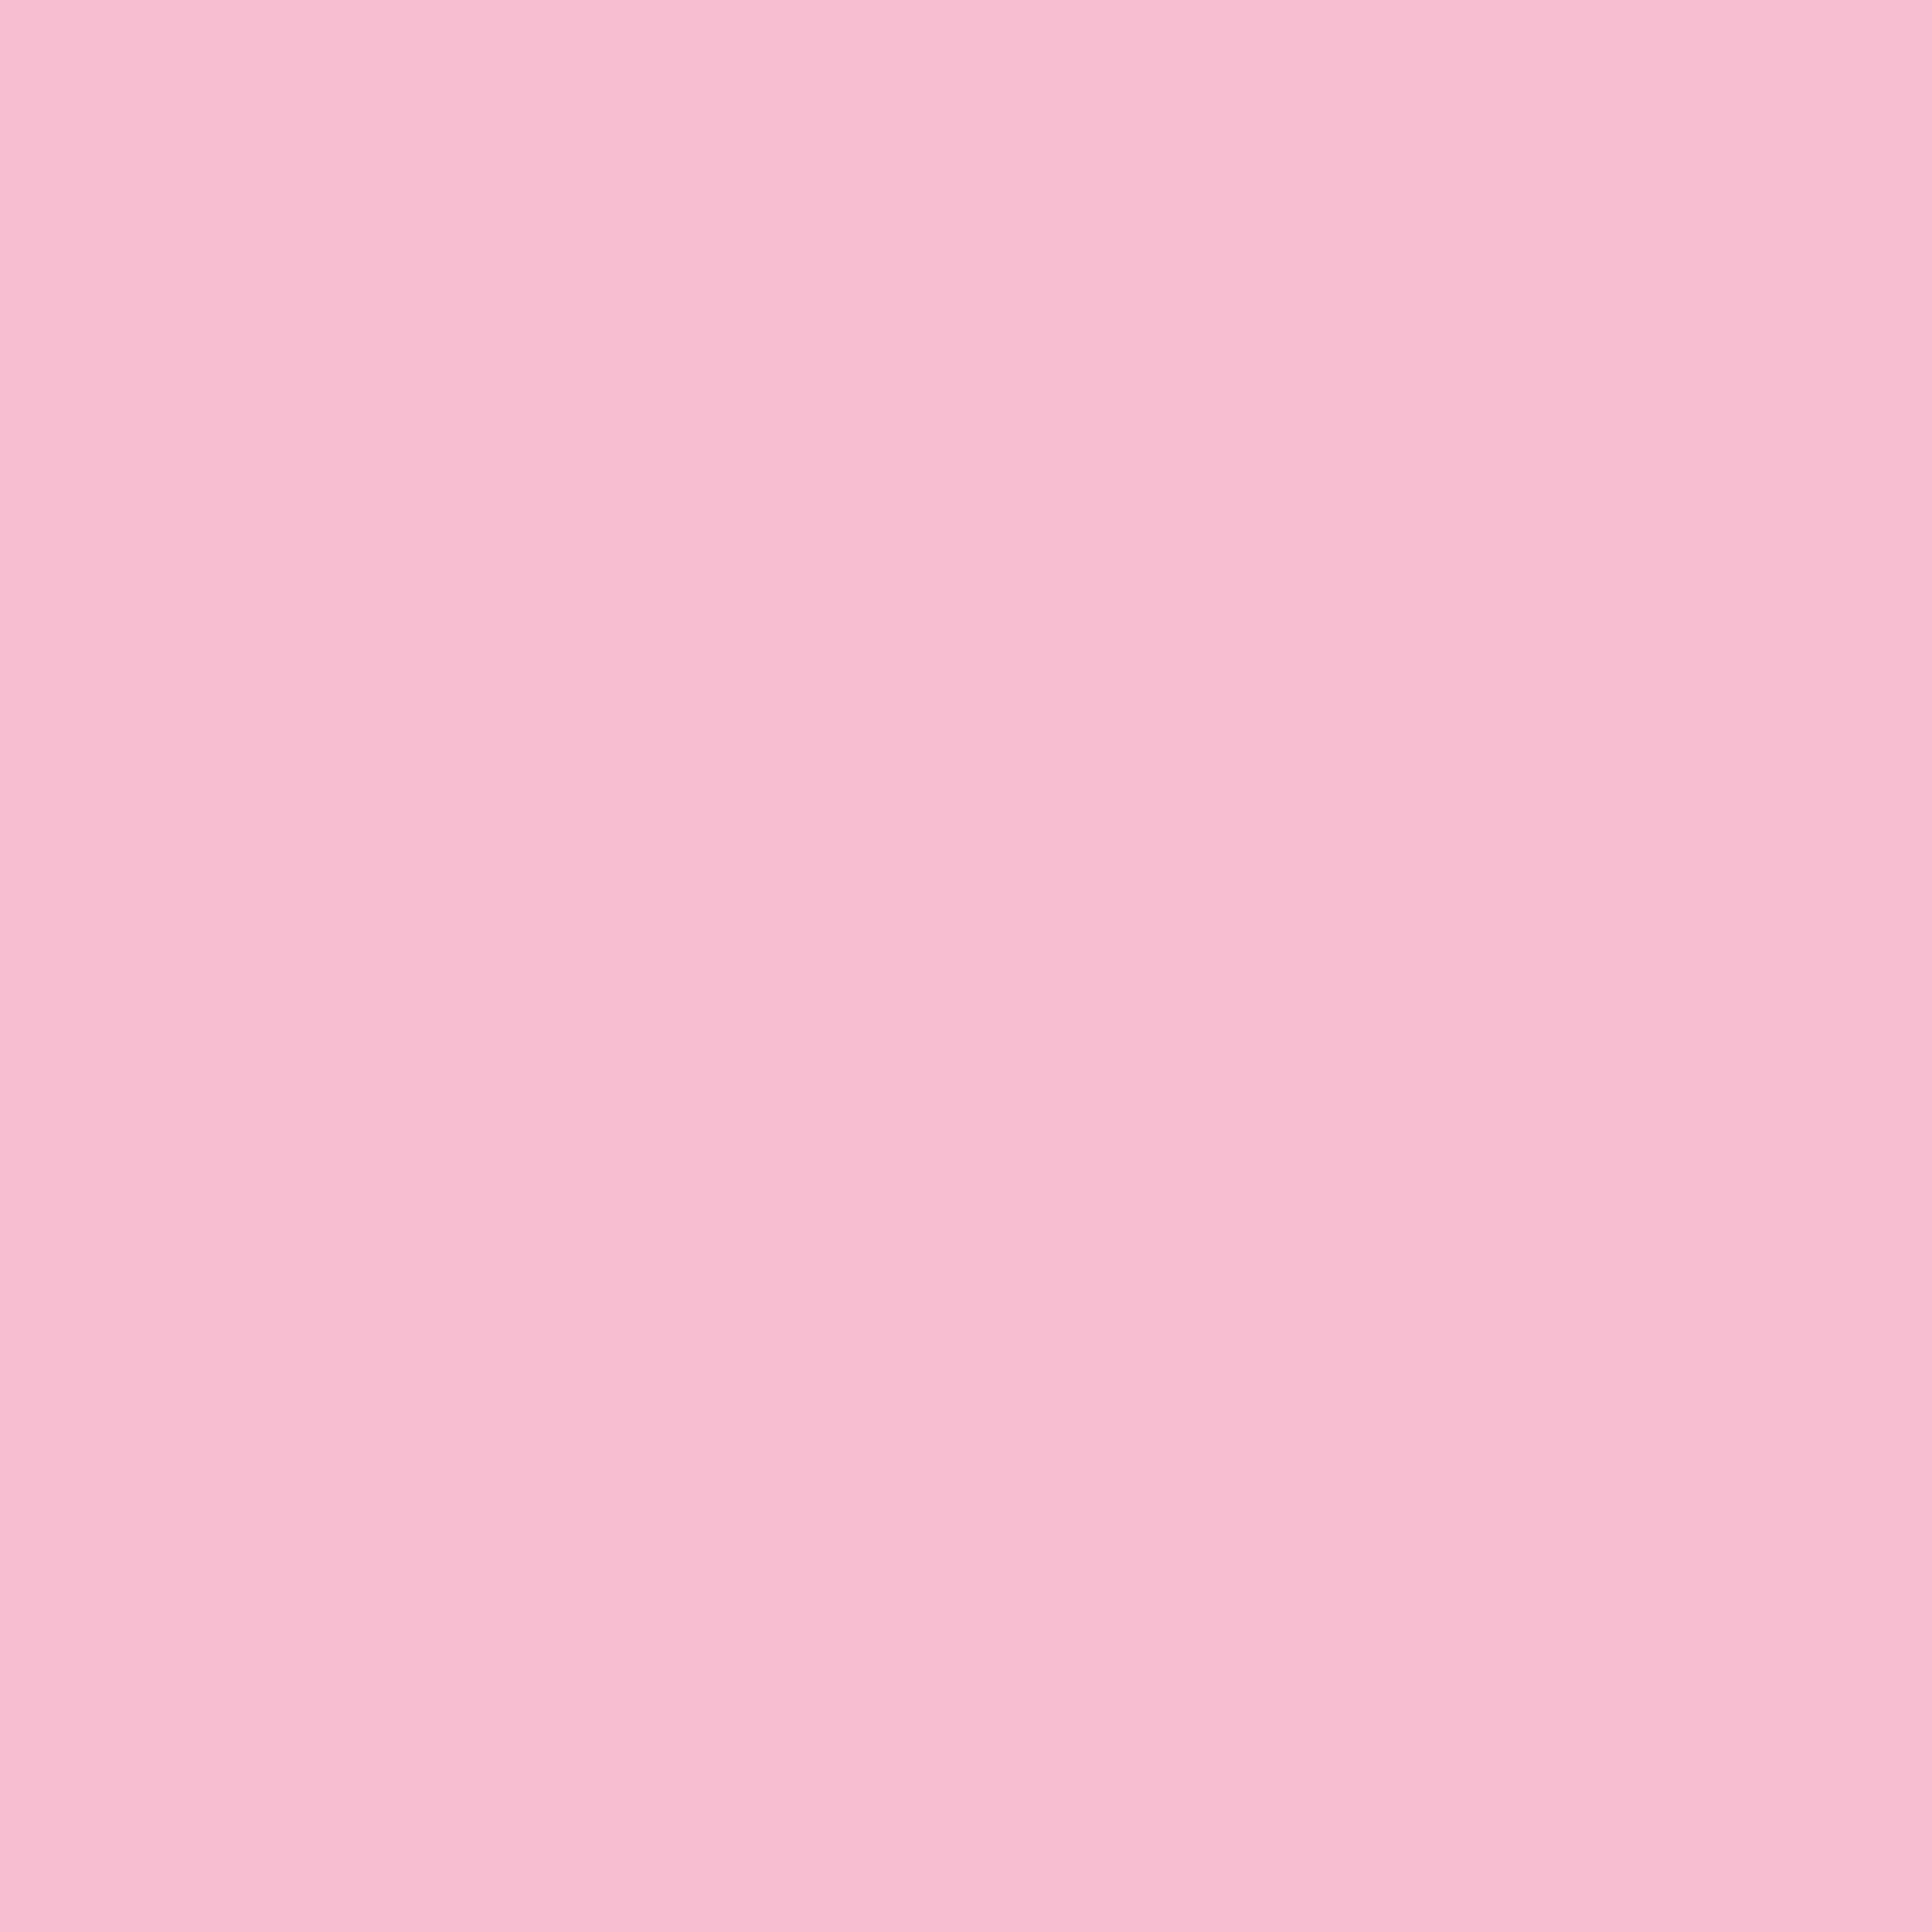 Light pink wallpaper